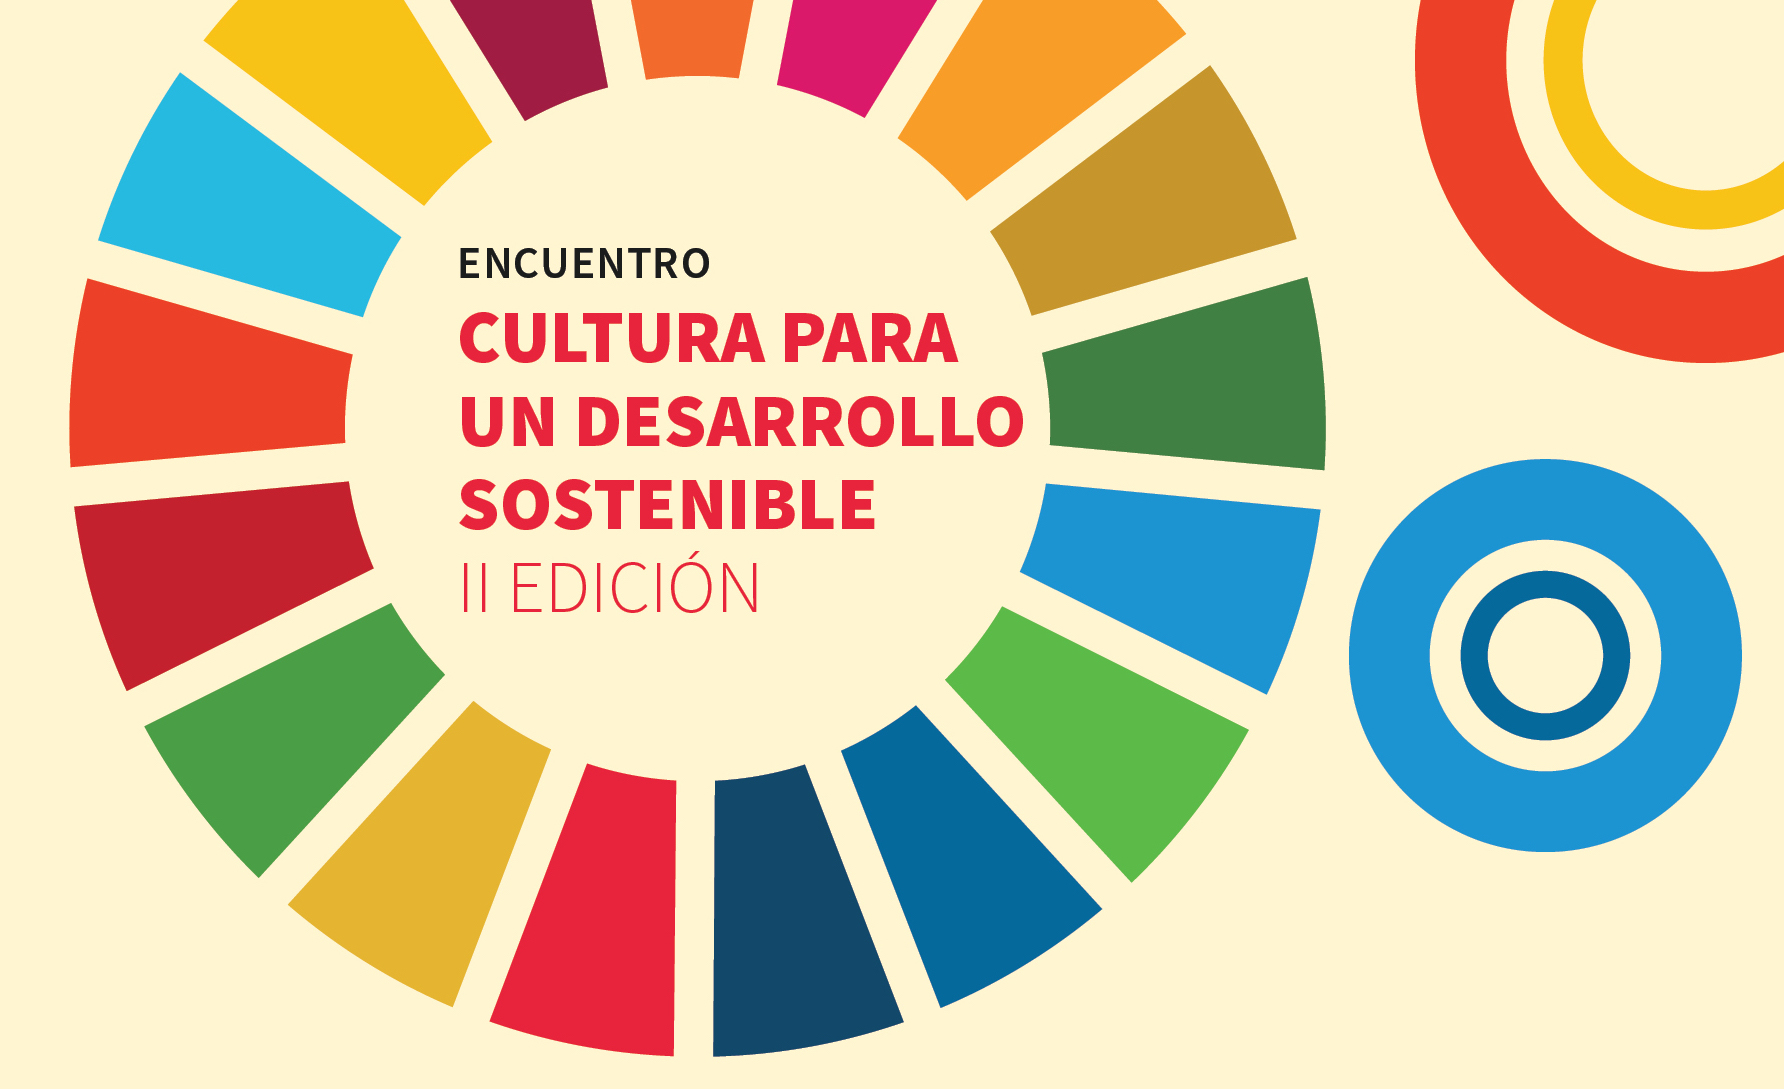 Realizarán la II Edición del Encuentro “Cultura para un Desarrollo Sostenible”